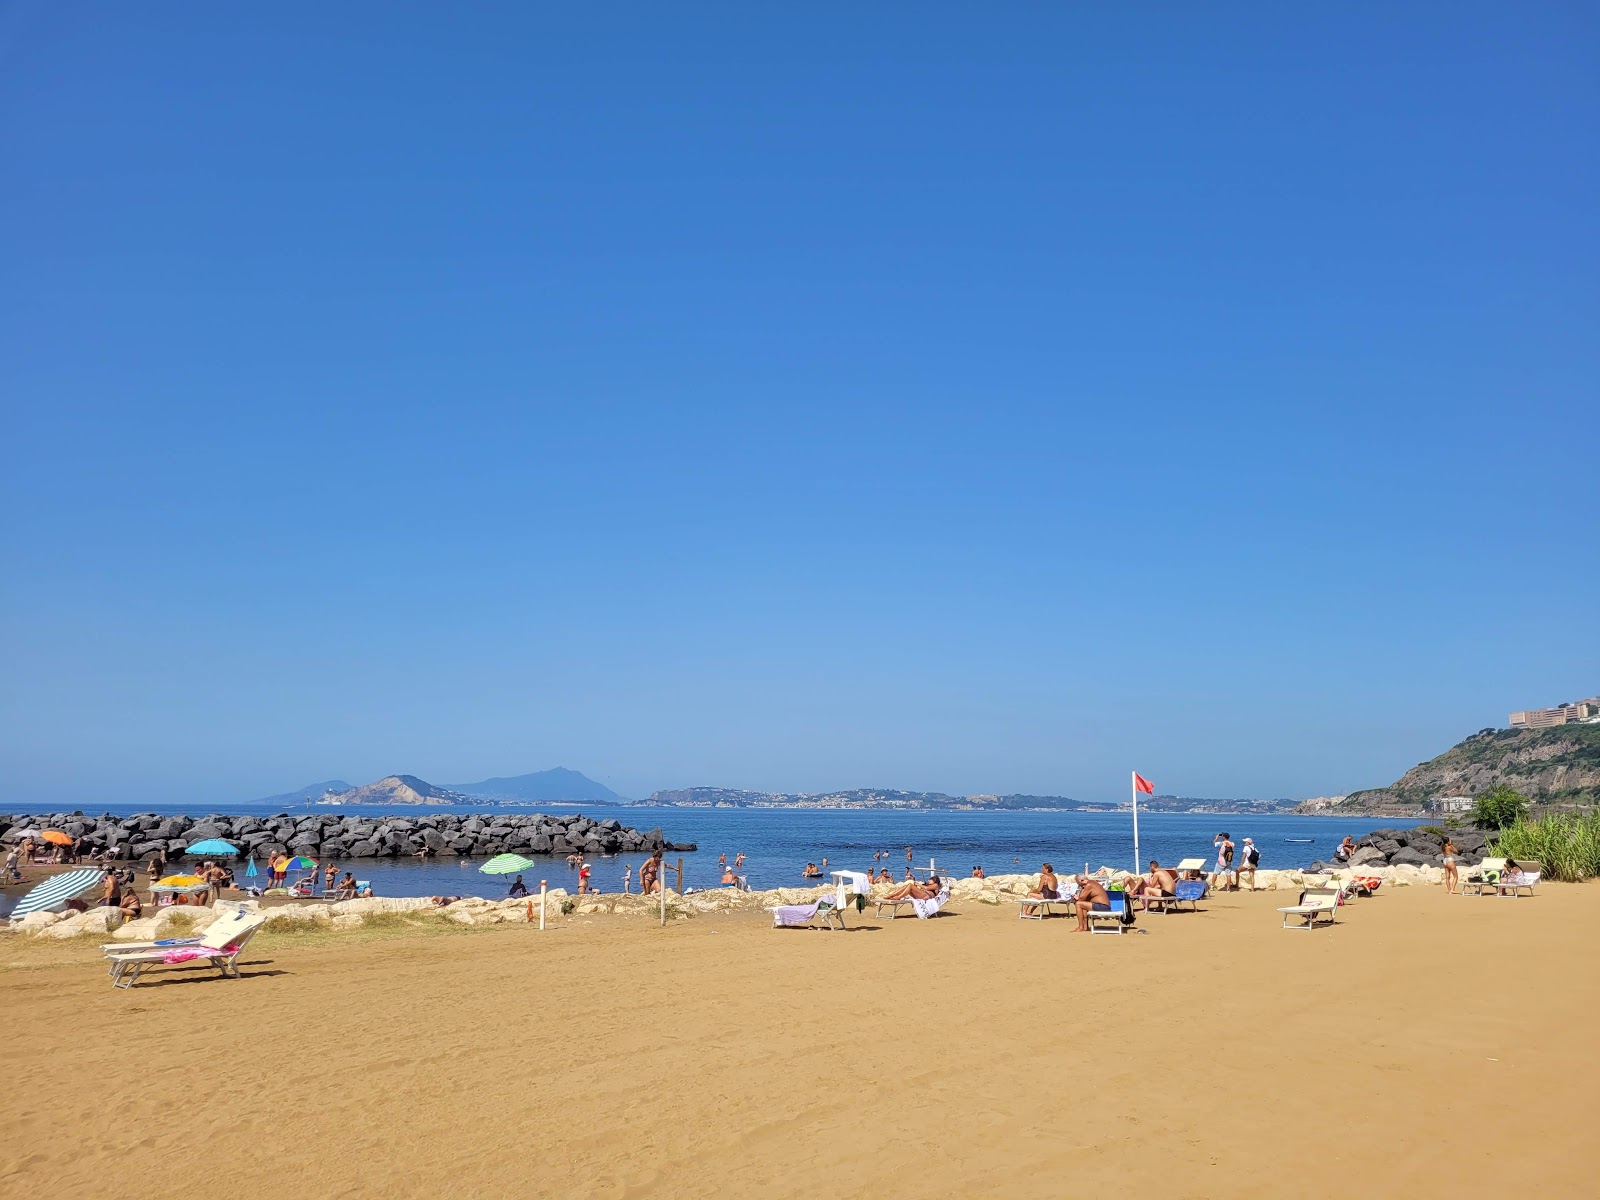 Spiaggia di Bagnoli'in fotoğrafı geniş plaj ile birlikte